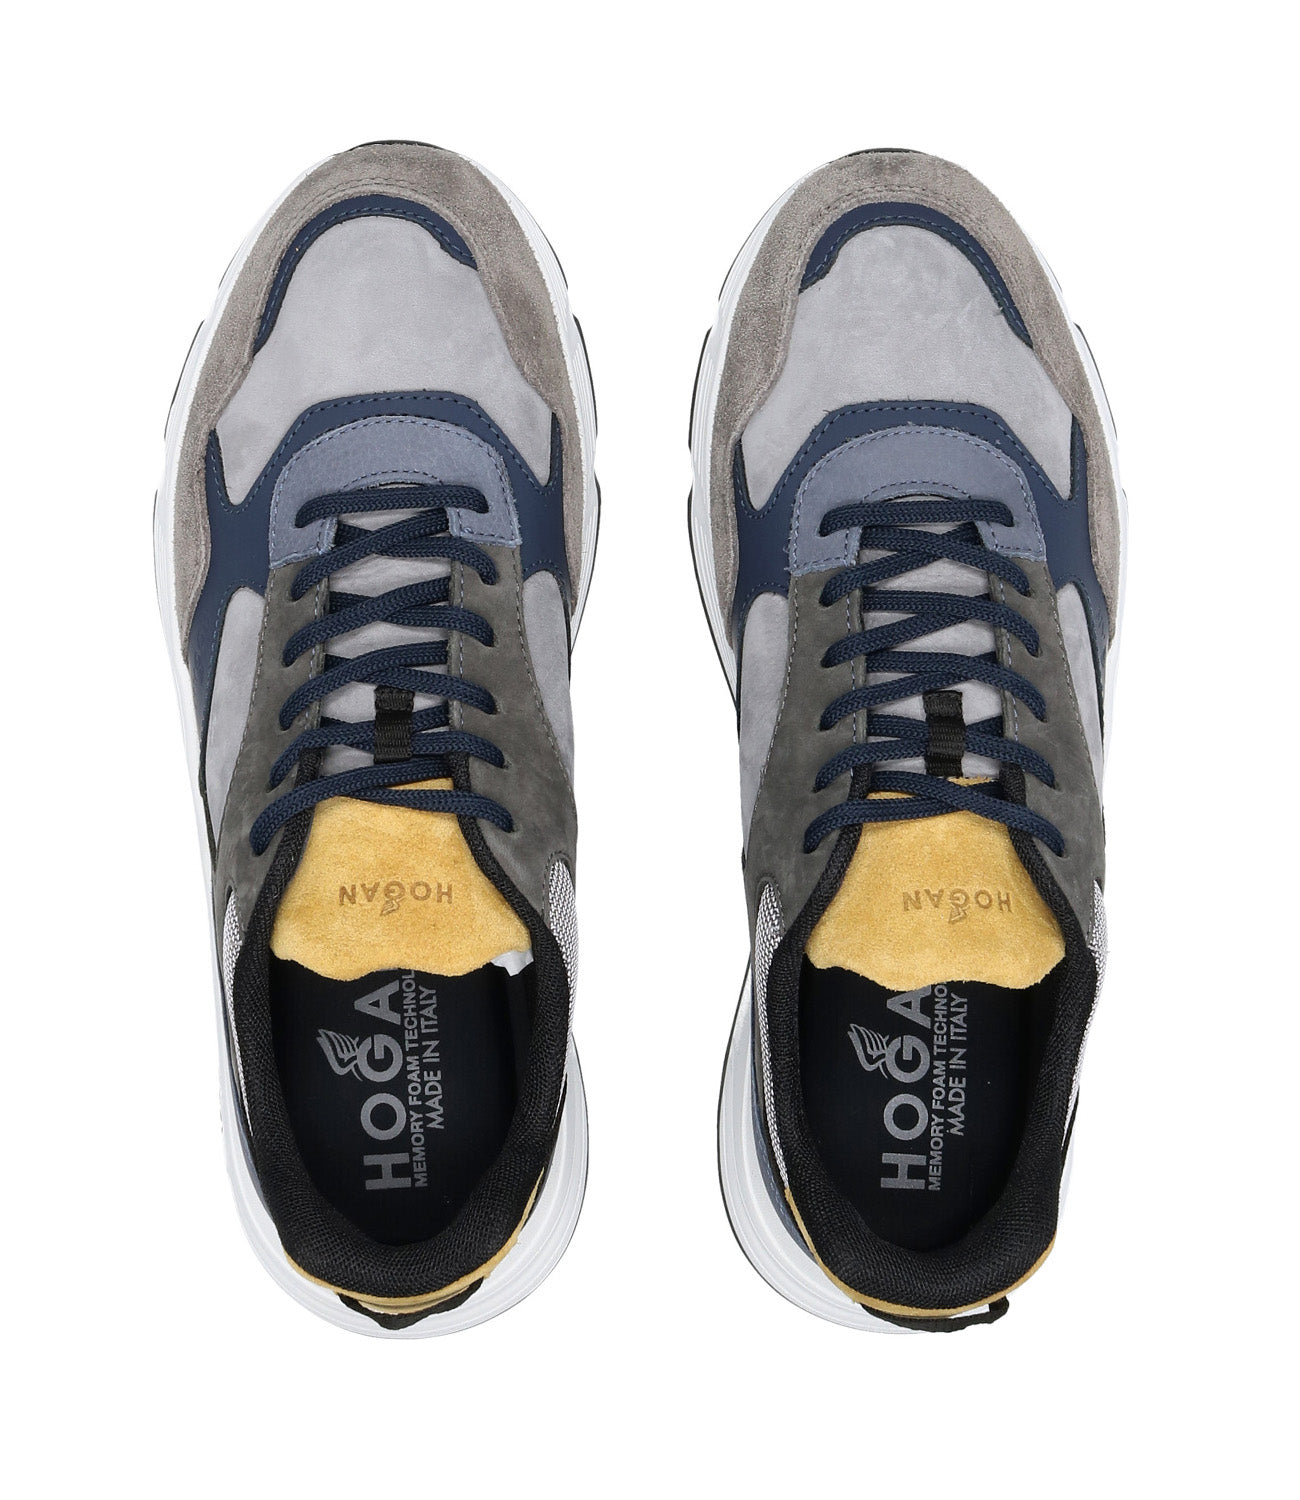 Hogan | Sneakers Hyperlight Grigio, Blu e Giallo